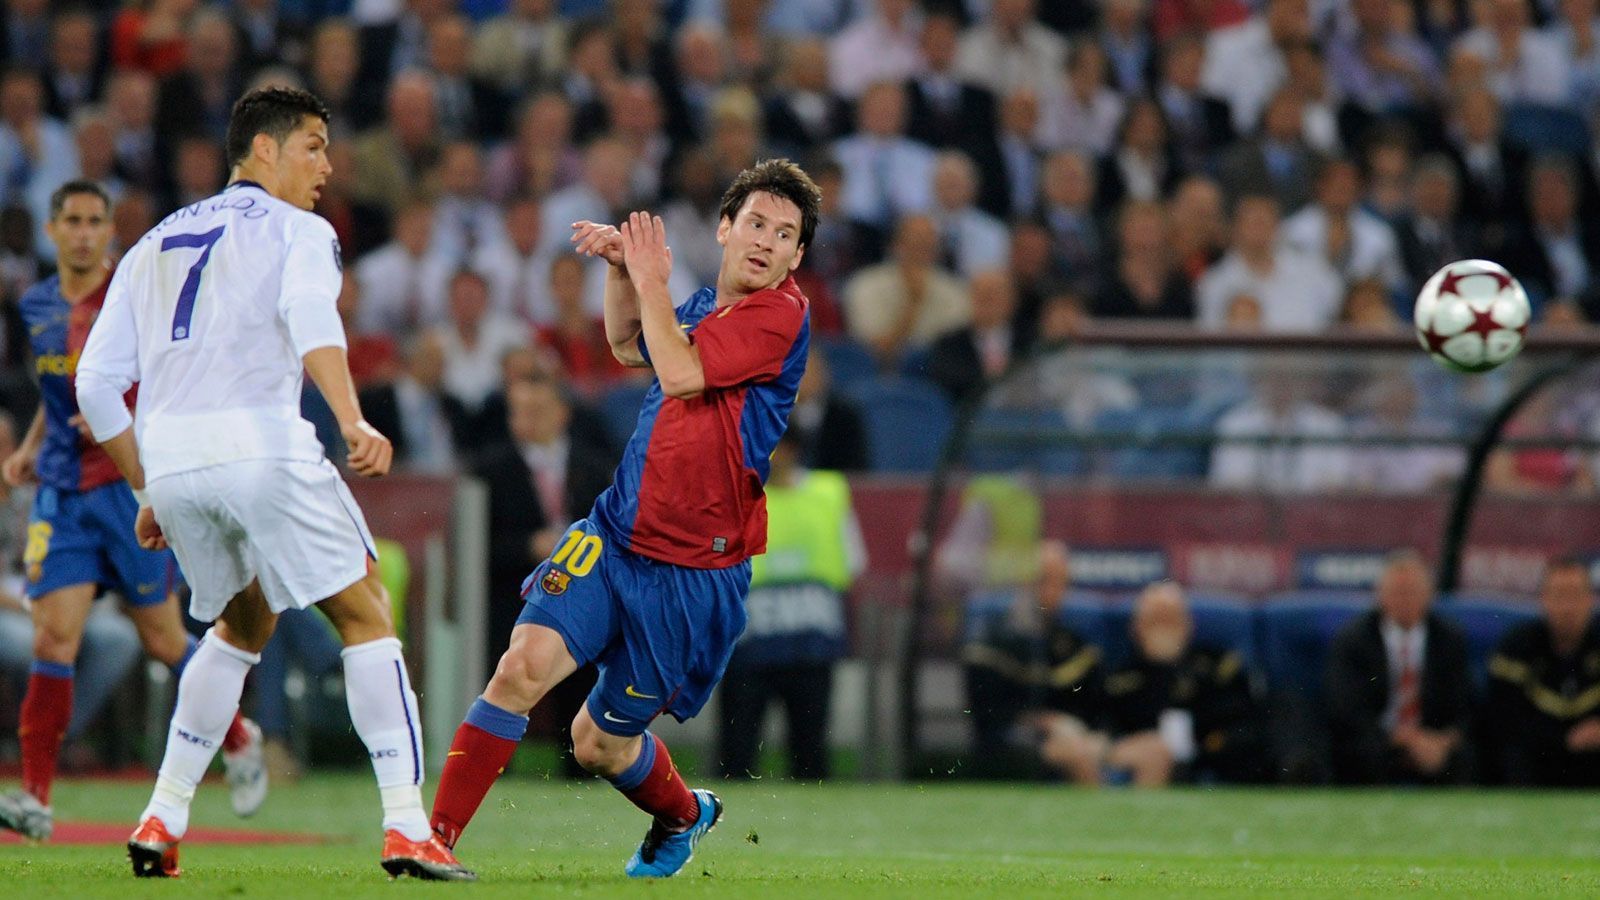 
                <strong>2009: FC Barcelona - Manchester United 2:0</strong><br>
                Das einzige direkte Aufeinandertreffen von Lionel Messi und Cristiano Ronaldo, den beiden besten Fußballern der Gegenwart, in einem Champions-League-Endspiel. "La Pulga" gewann mit seinem FC Barcelona 2:0. Der 1,69 Meter große Argentinier markierte den zweiten Treffer von Barca und das per Kopf. Es war das letzte Puzzleteil im Triple - der Auftakt der großen Barca-Ära unter Pep Guardiola.
              